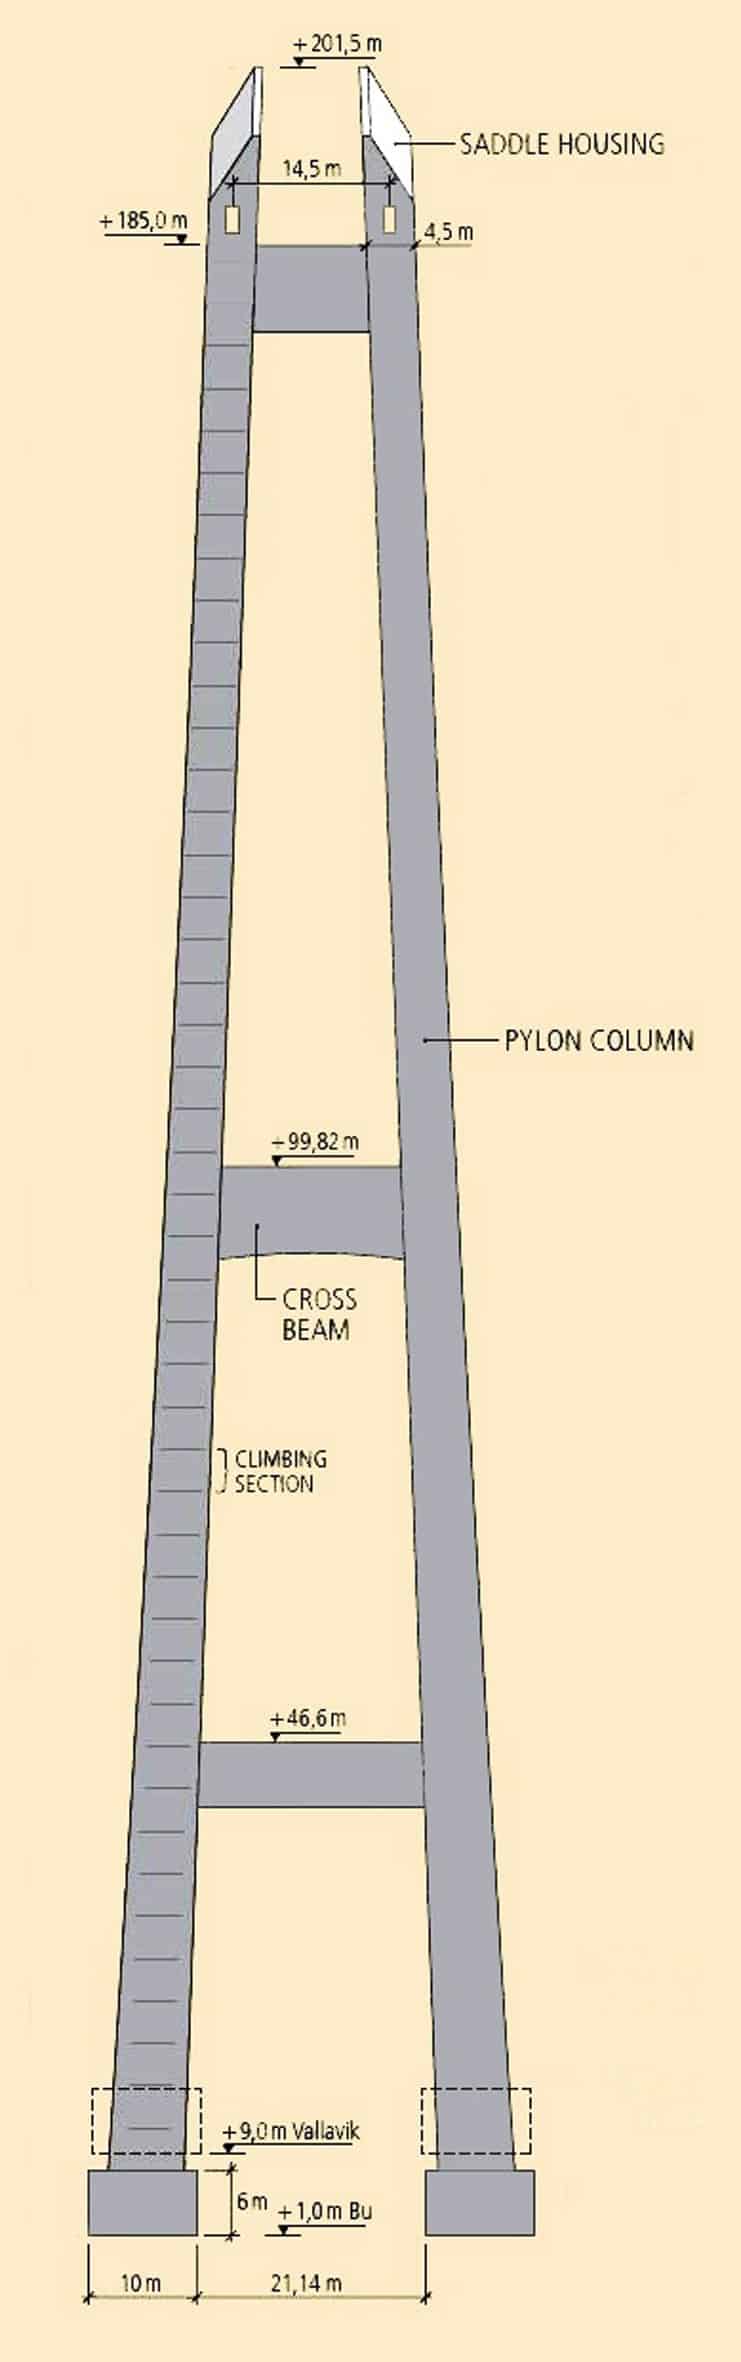 I piloni raggiungono un’altezza di 201,5 m